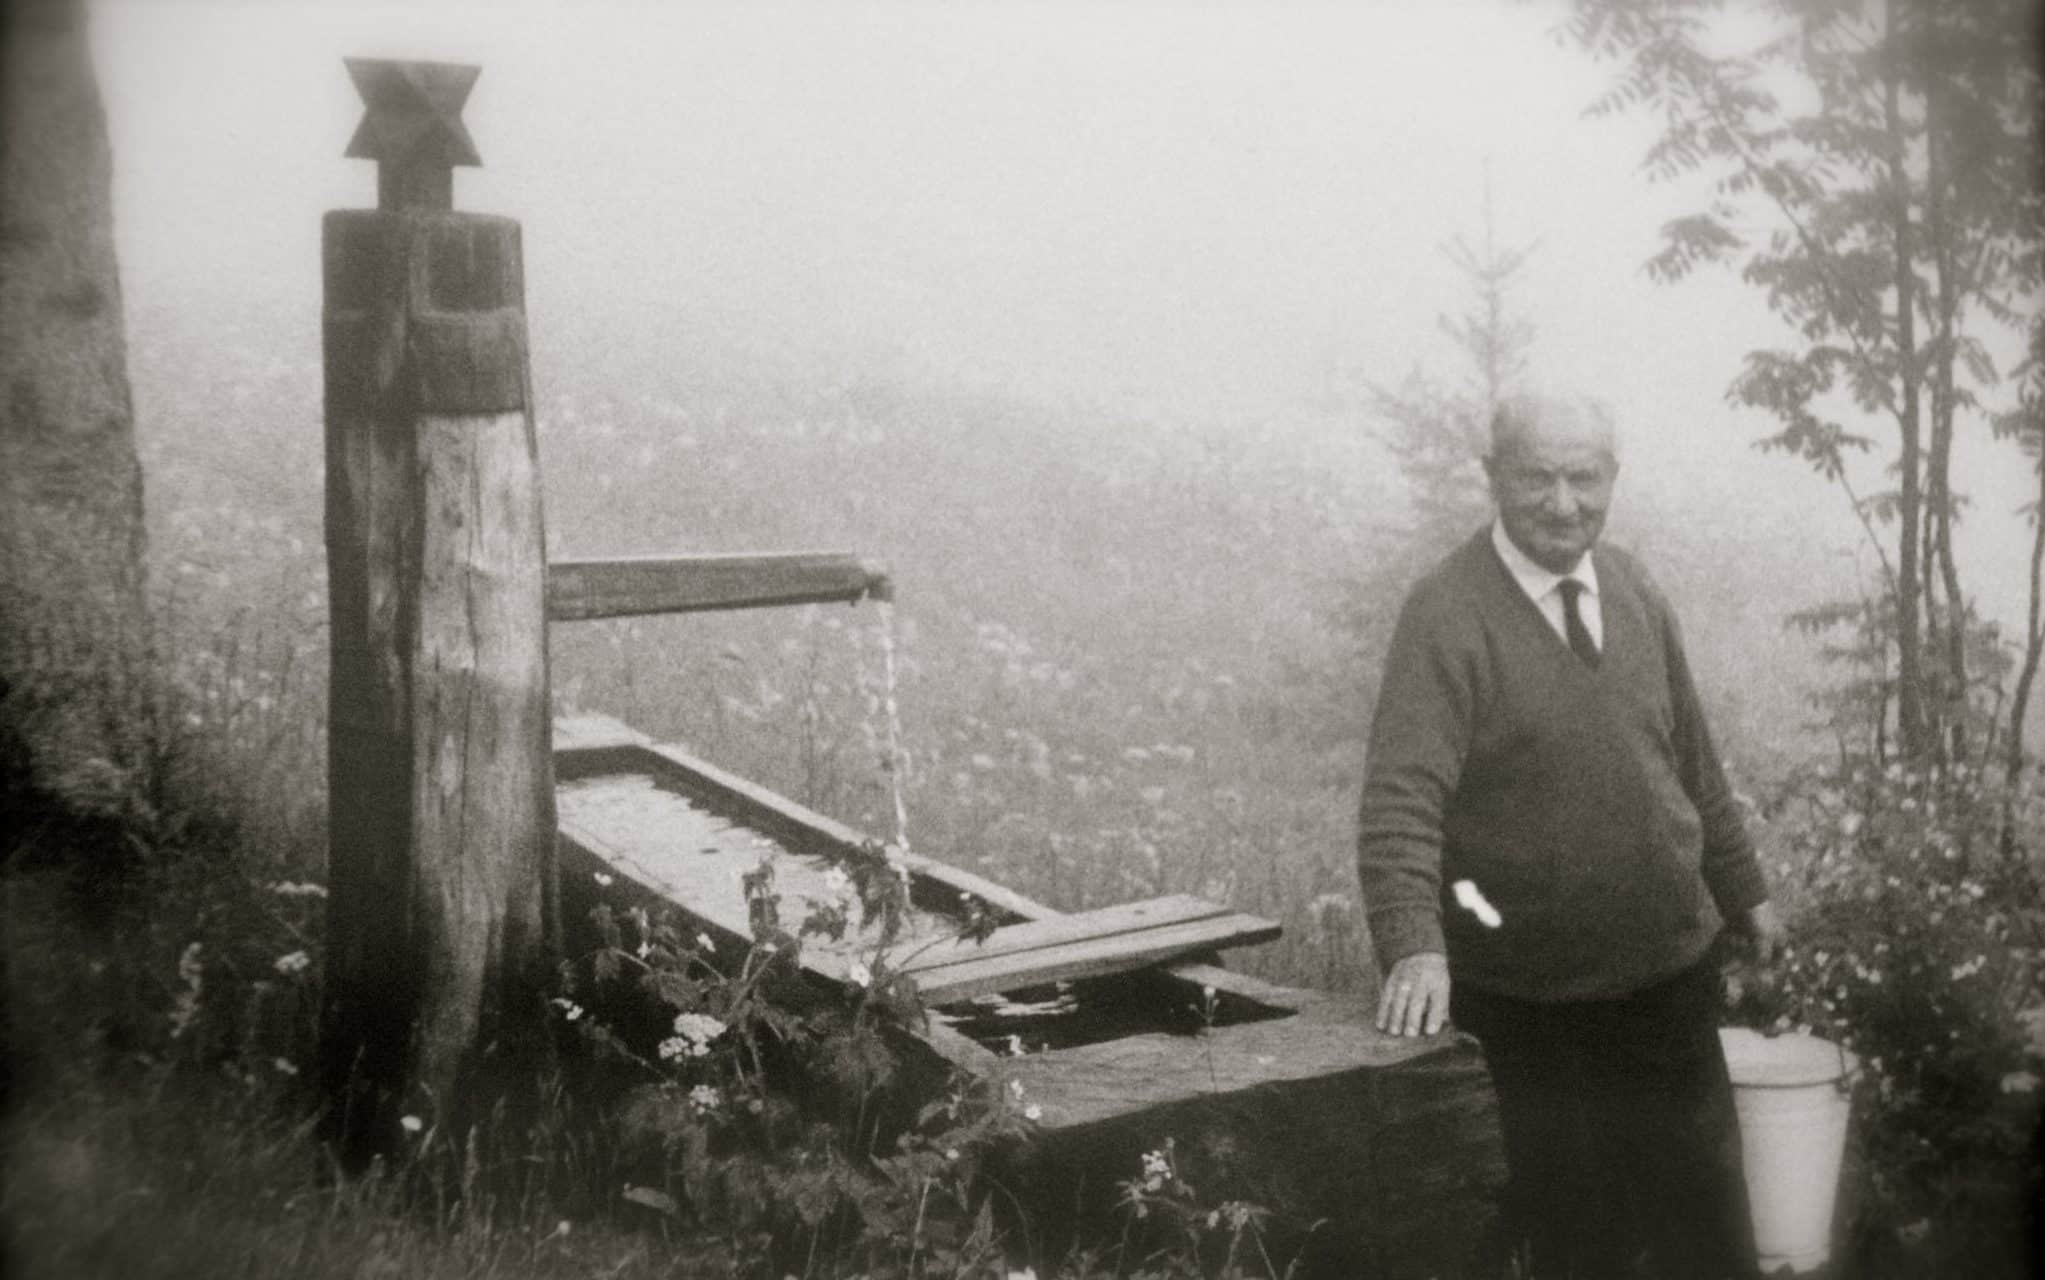 Uma fotografia de Heidegger. Ele está situado próximo a um poço, carregando um balde d'água e sorrindo.